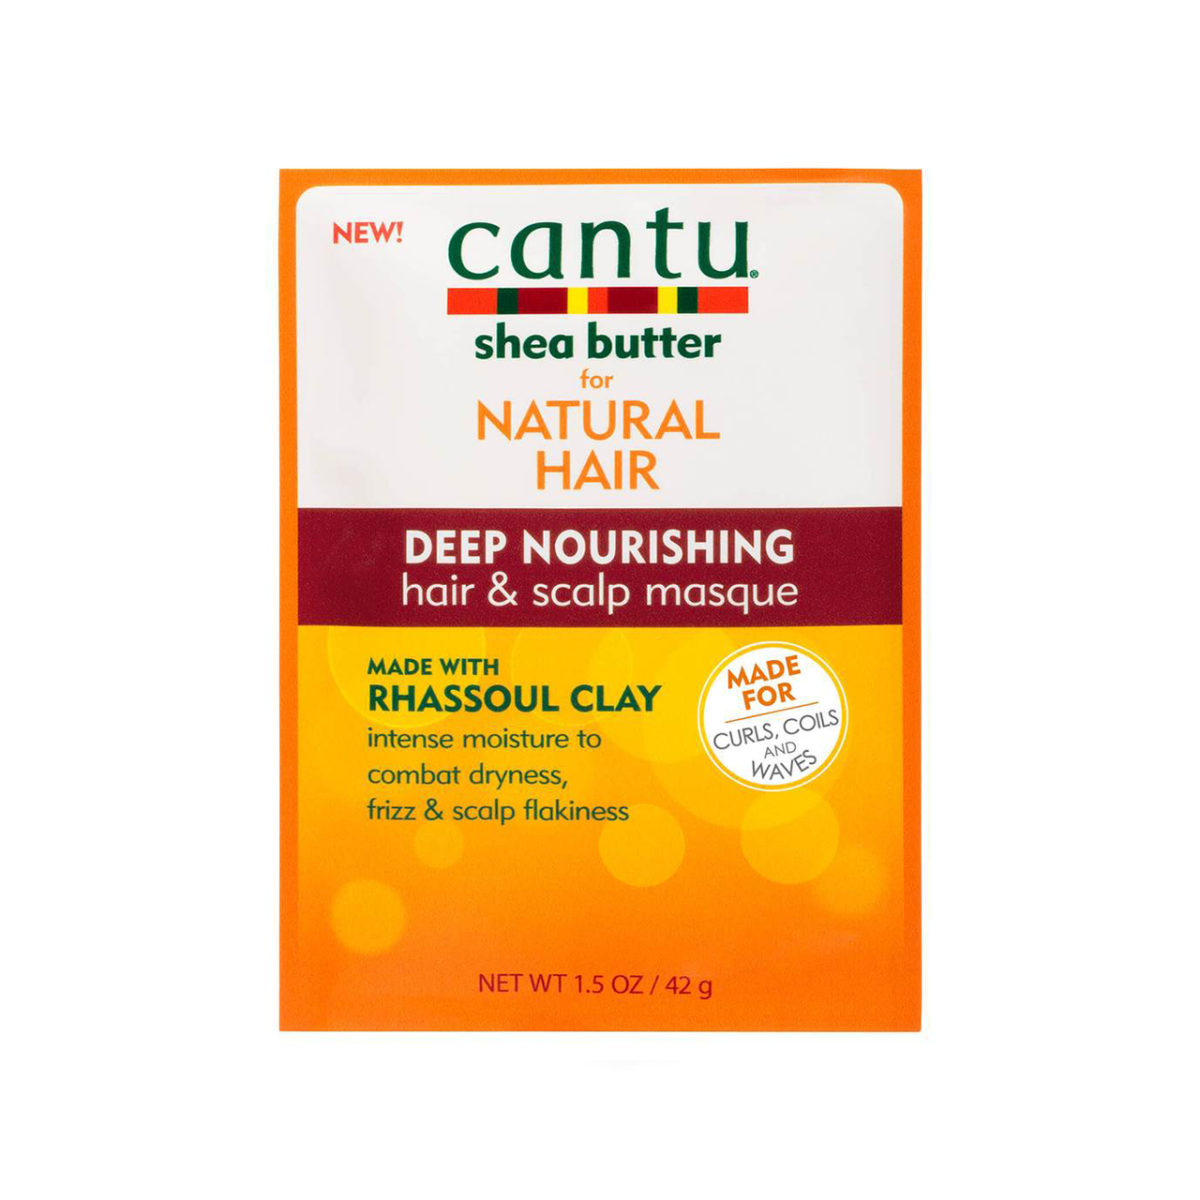 Cantu - Deep Nourishing Hair Masque